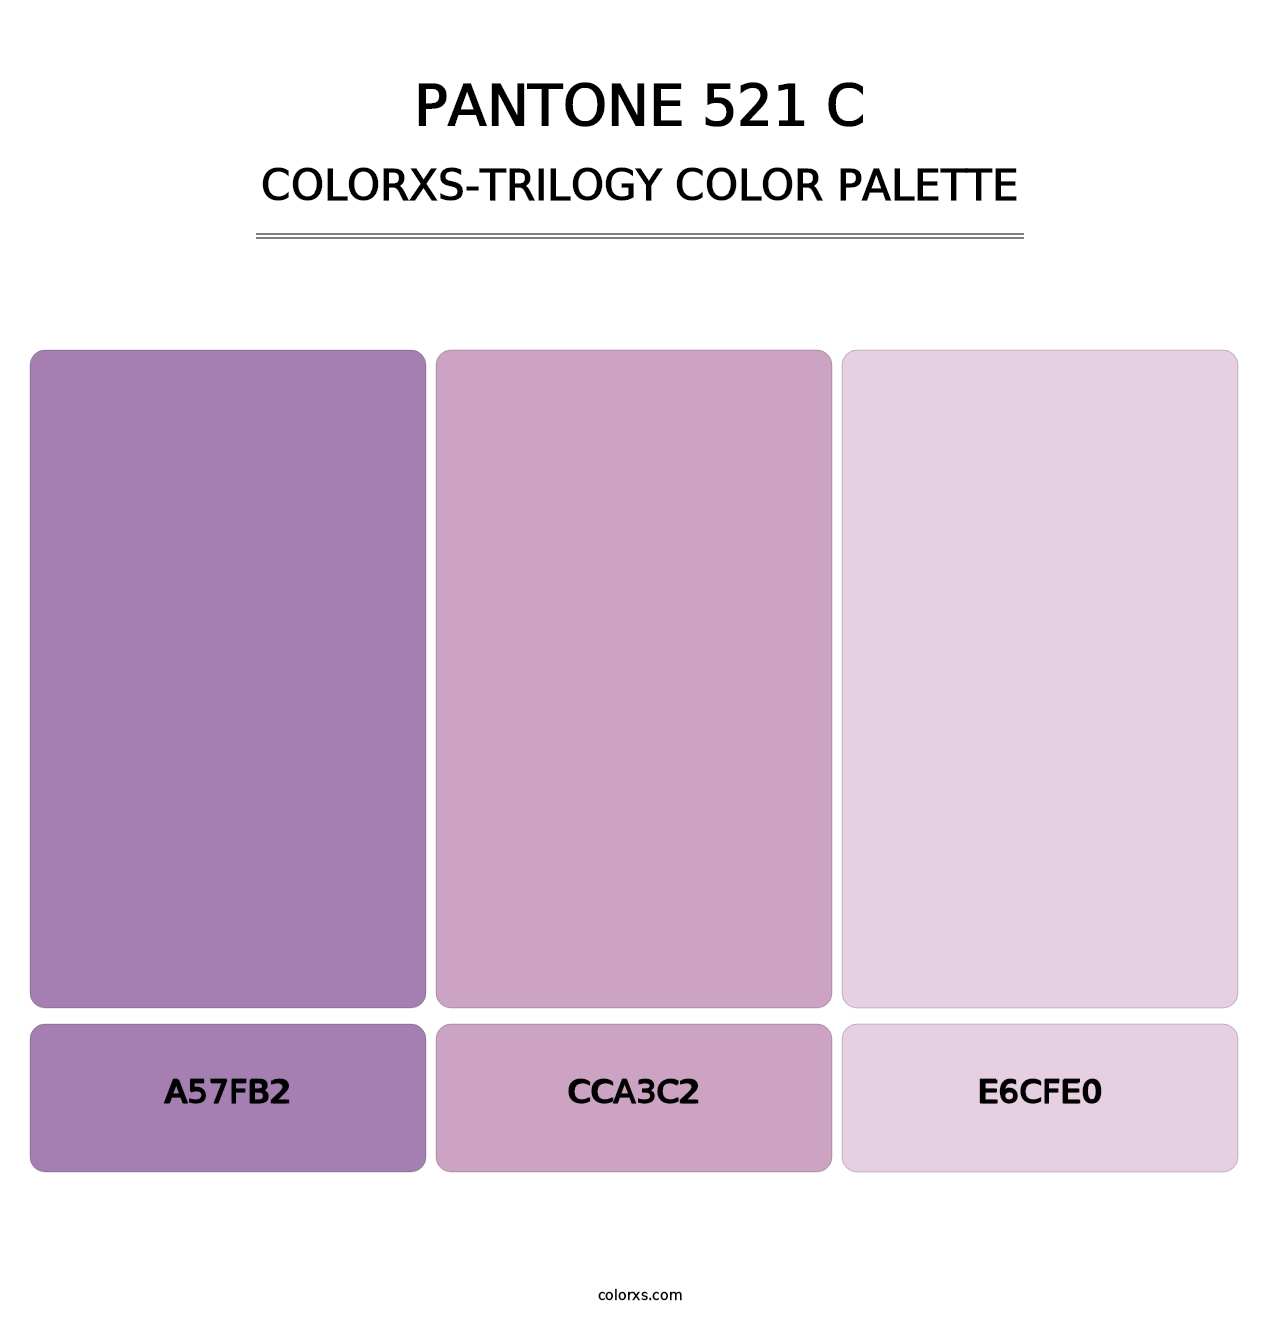 PANTONE 521 C - Colorxs Trilogy Palette